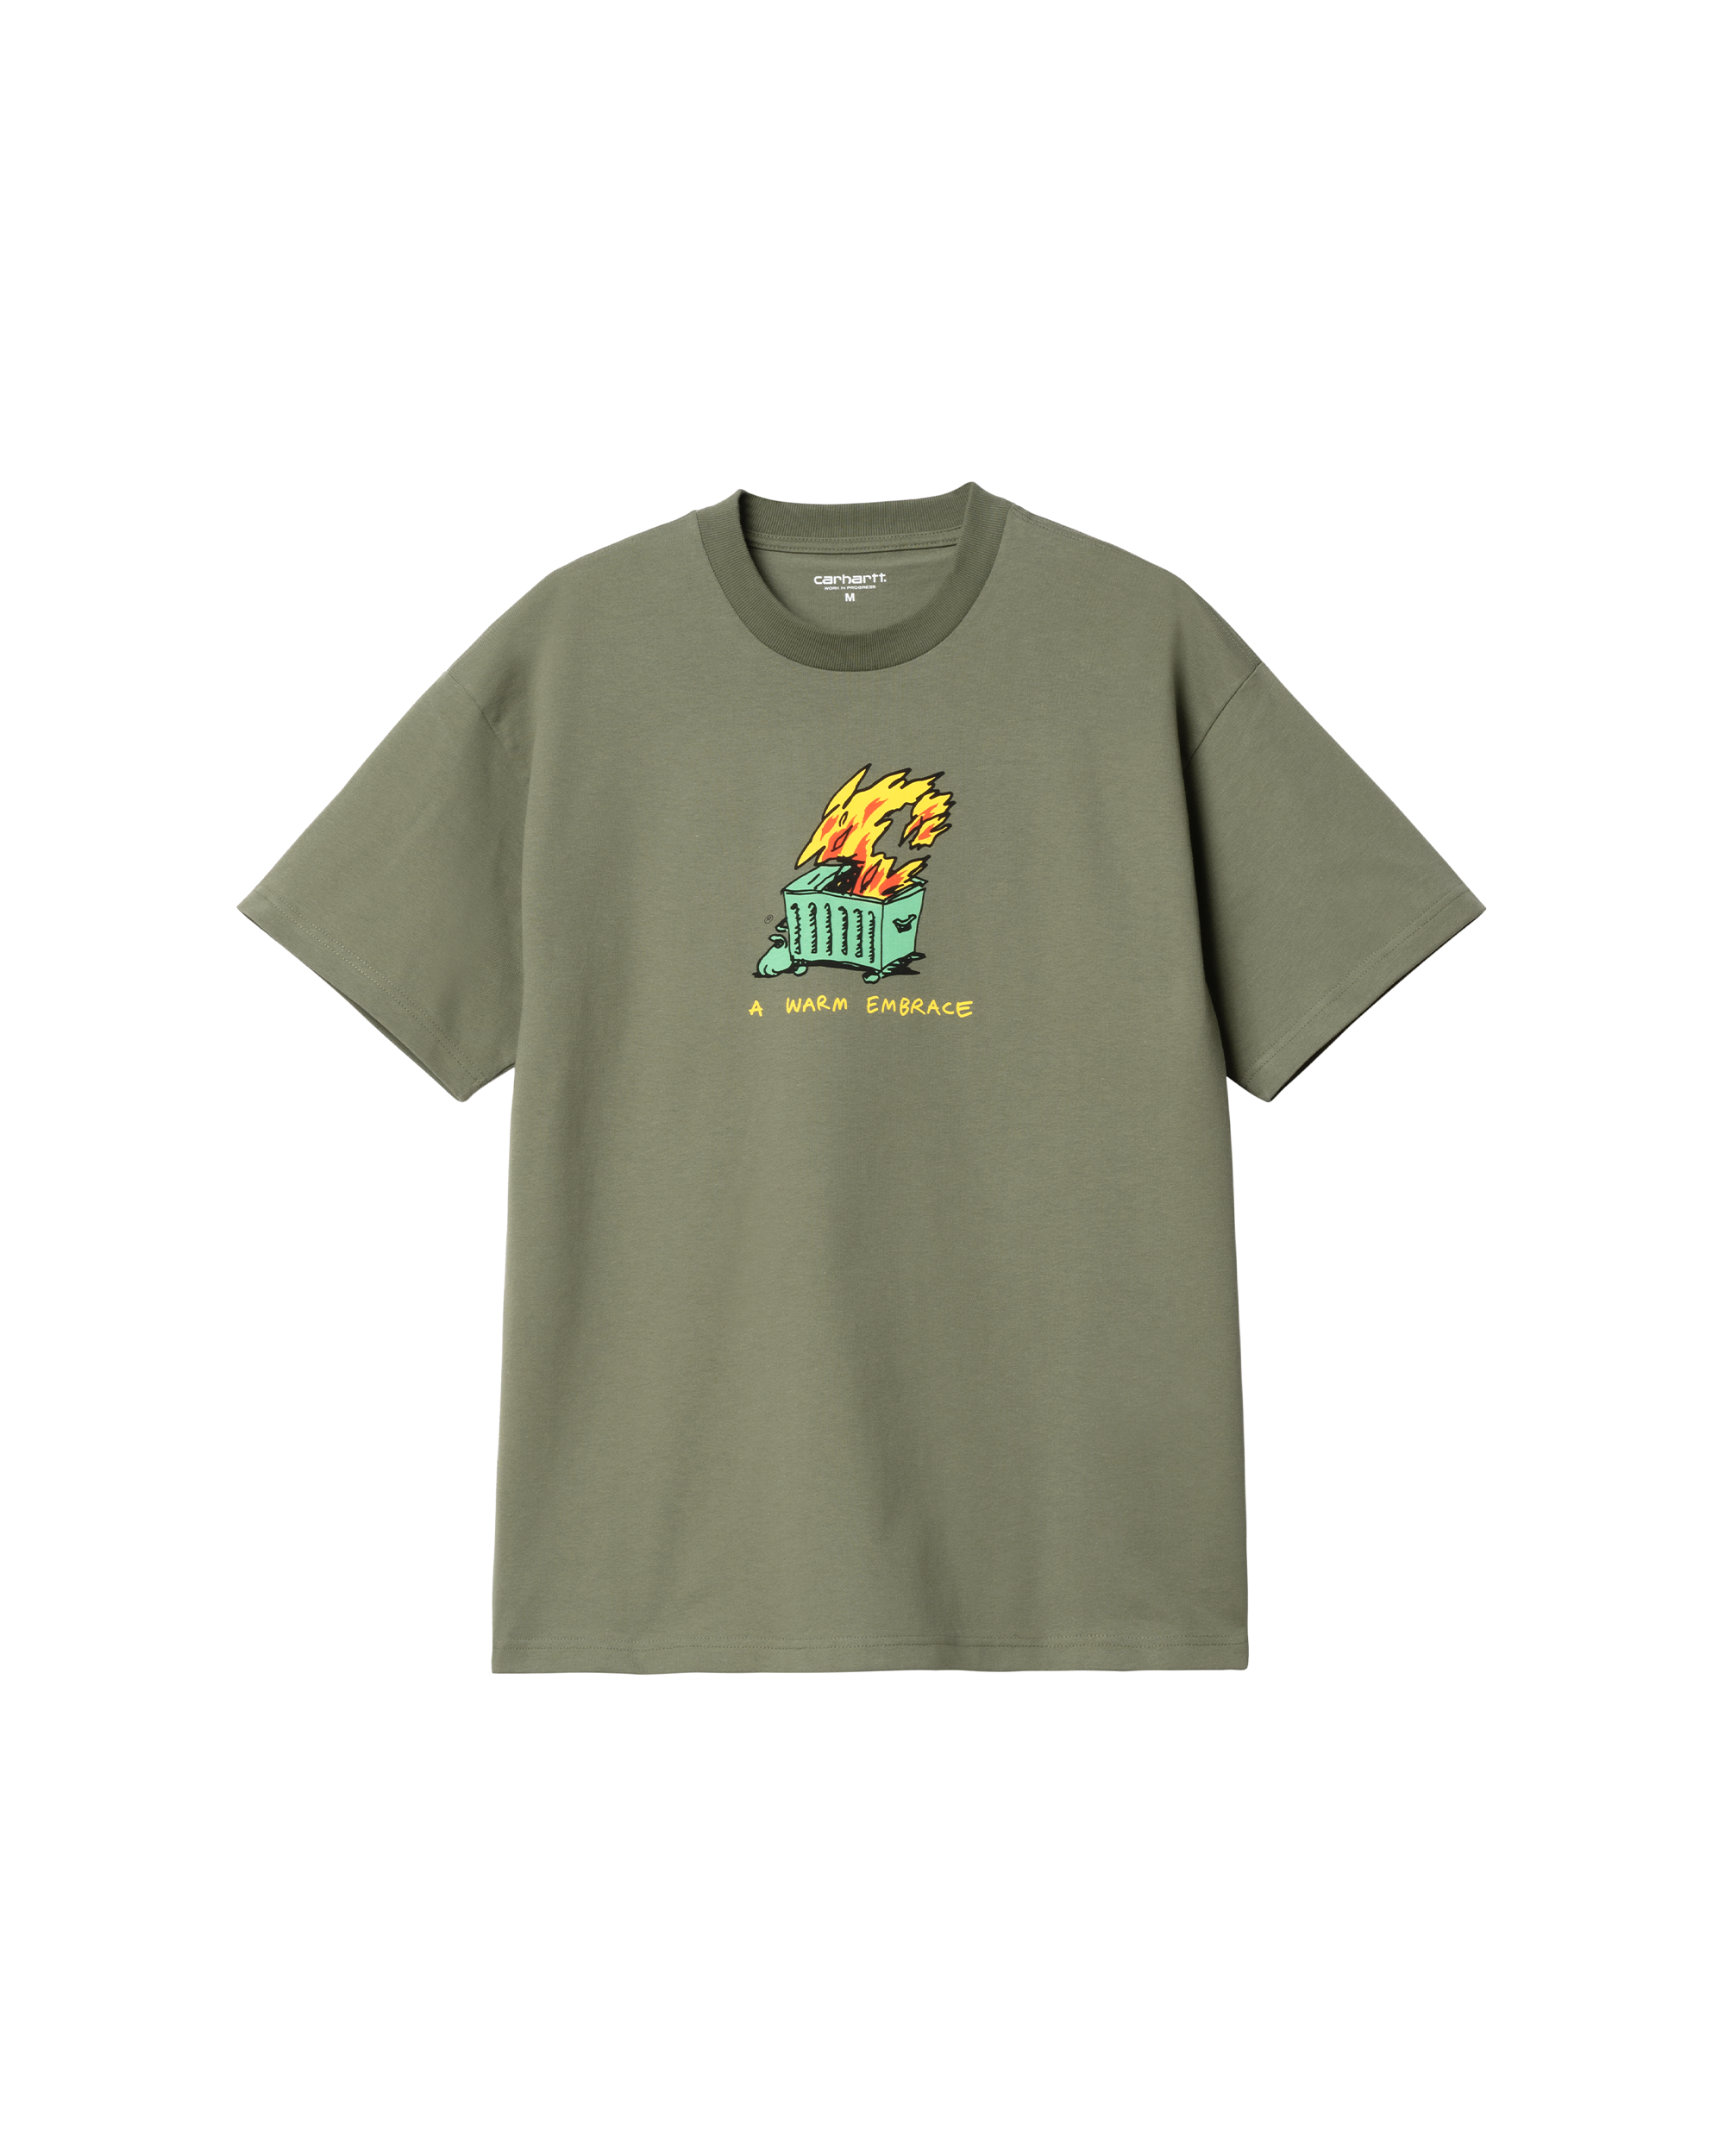 S/S Warm Embrace T-Shirt - Dollar Green